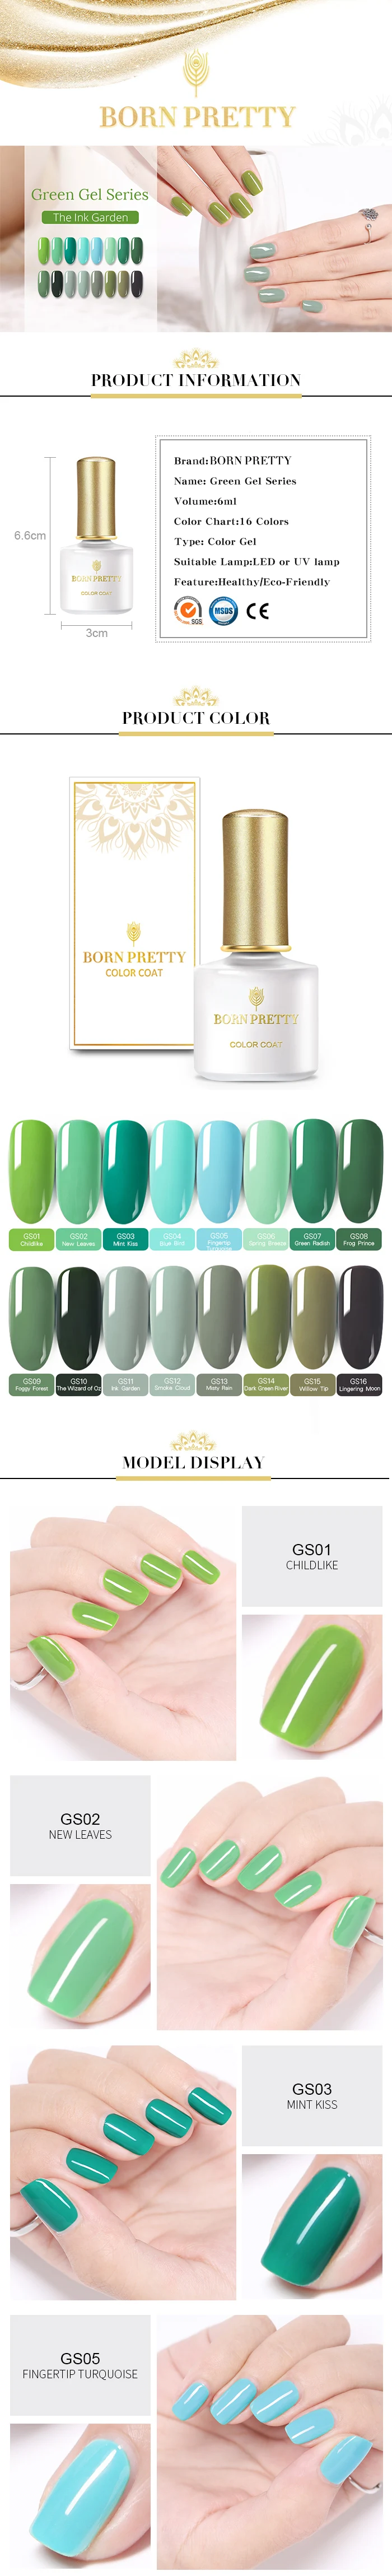 BORN PRETTY 6 мл чистый цветной Гель-лак зеленая серия замочить от ногтей УФ гель лак DIY маникюр дизайн